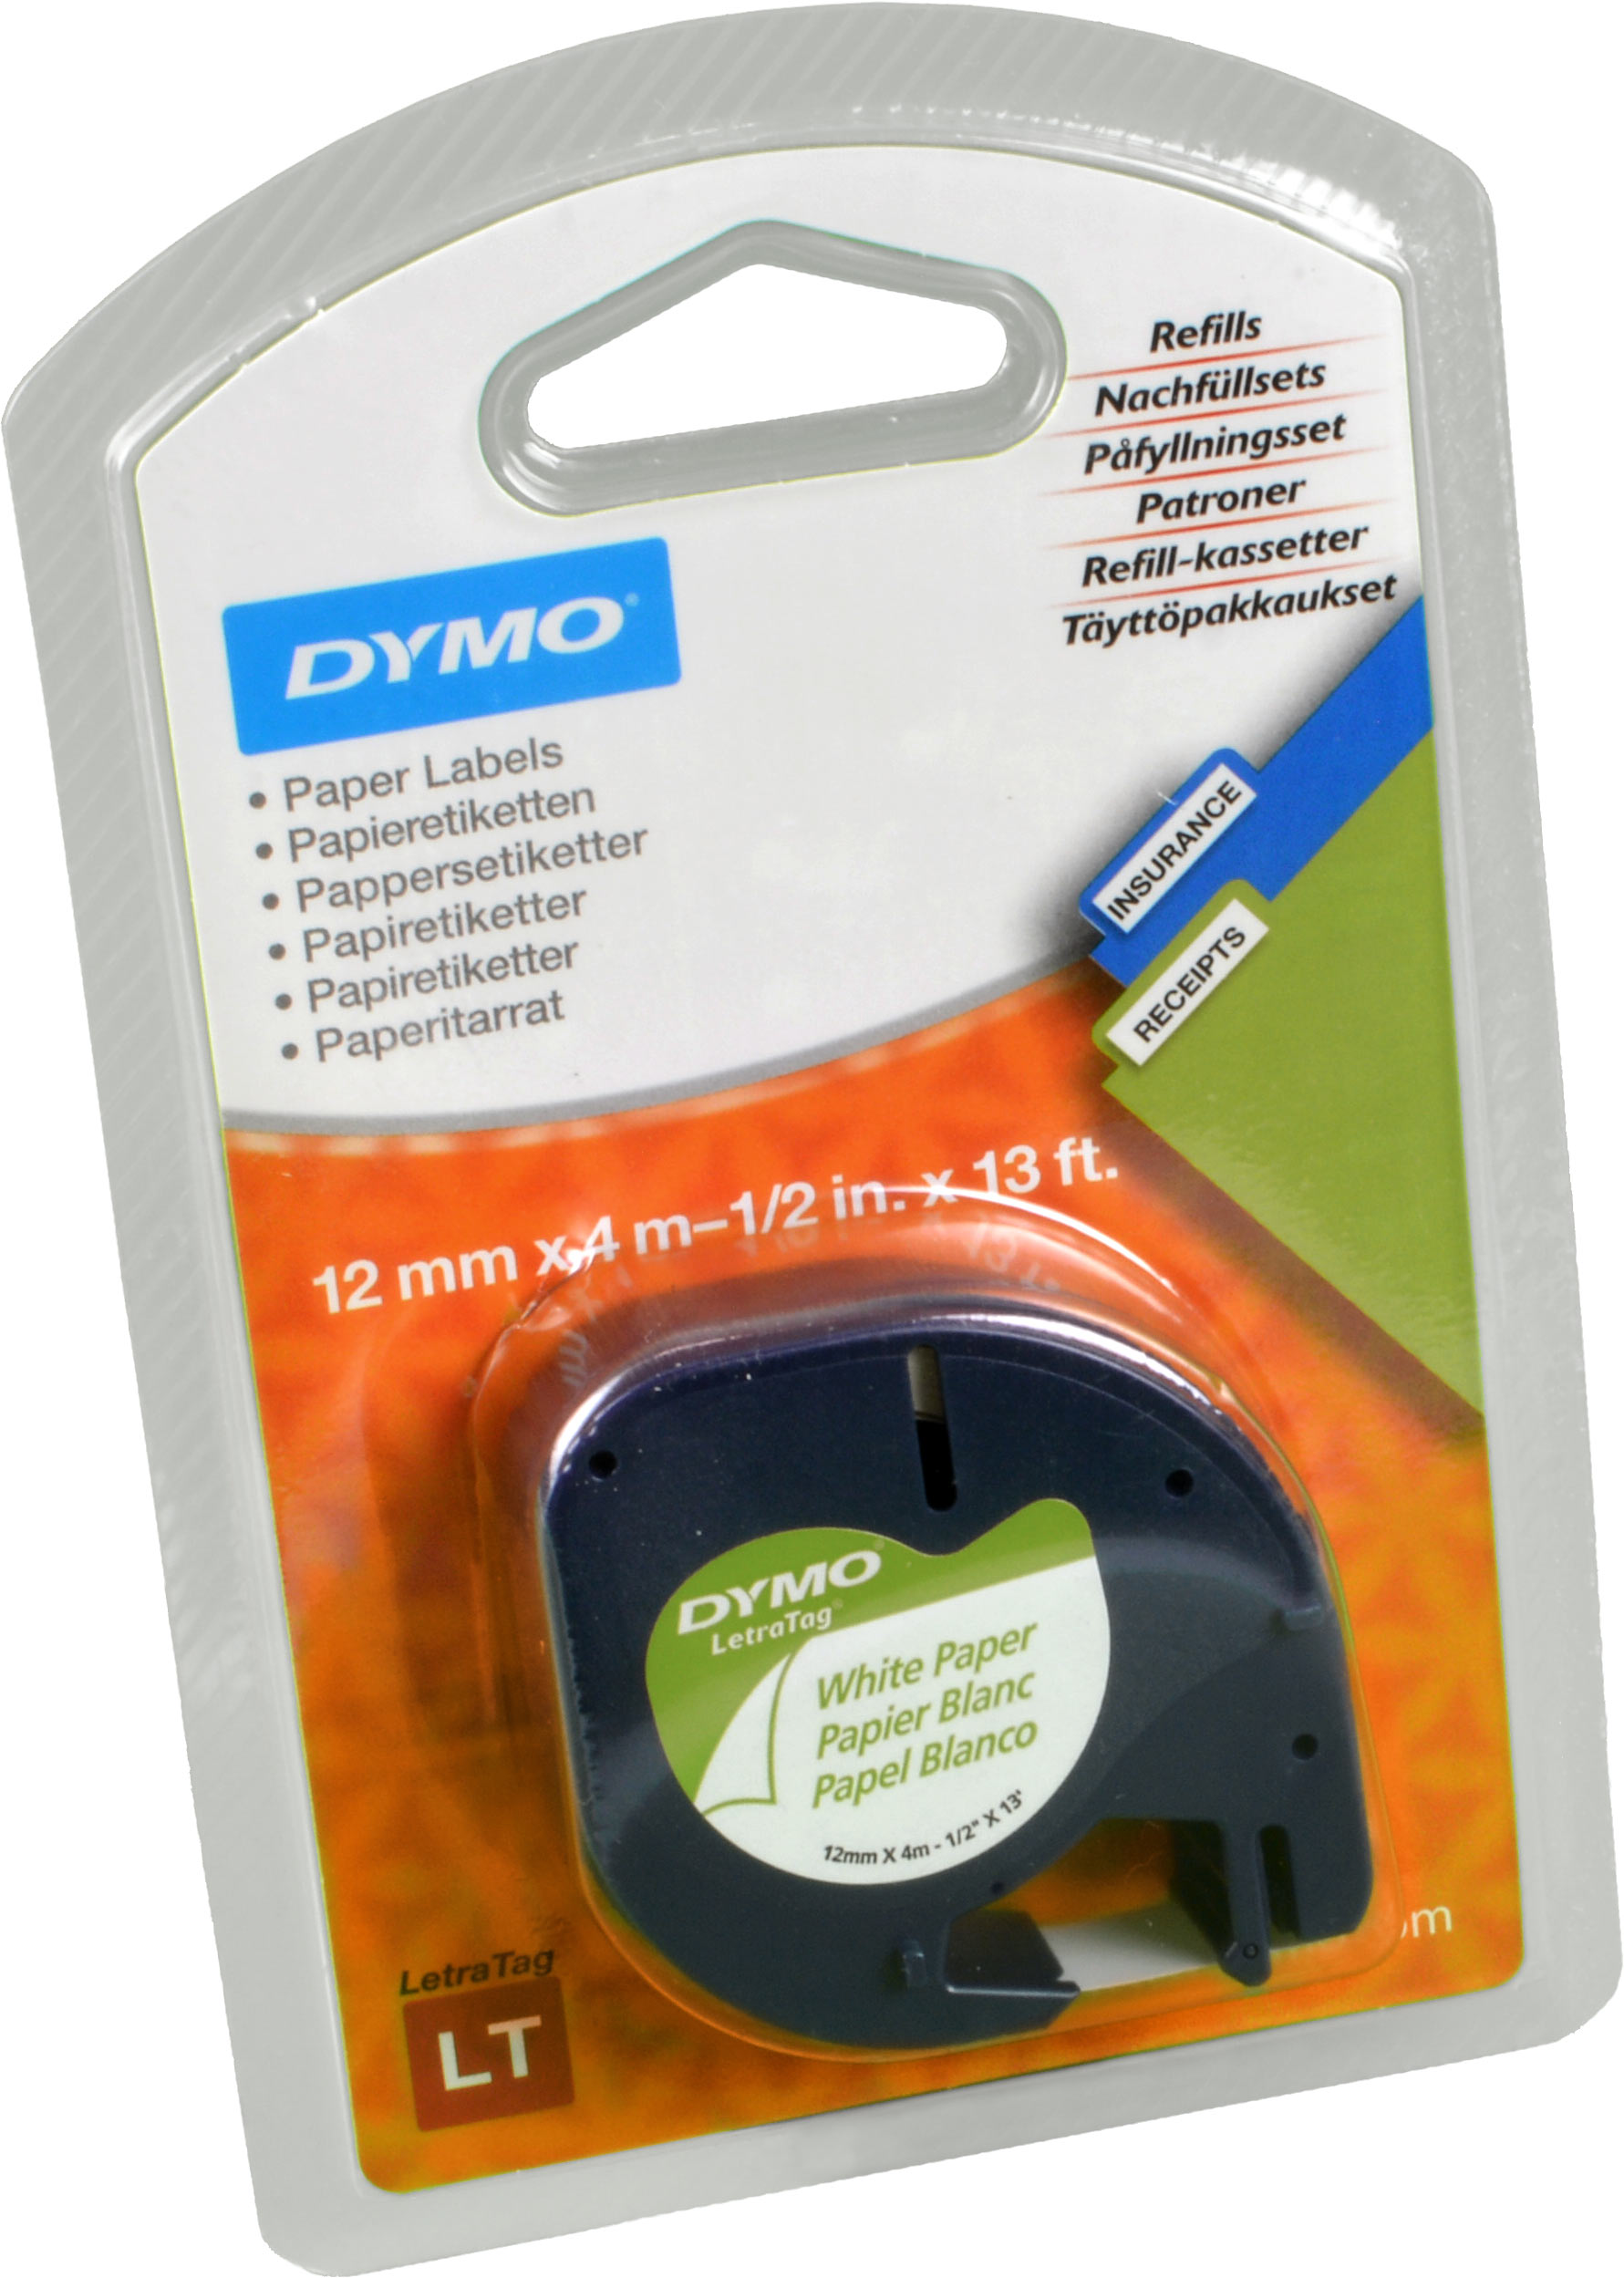 Dymo Originalband 91220  schwarz auf weiß  12mm x 4m  Papier